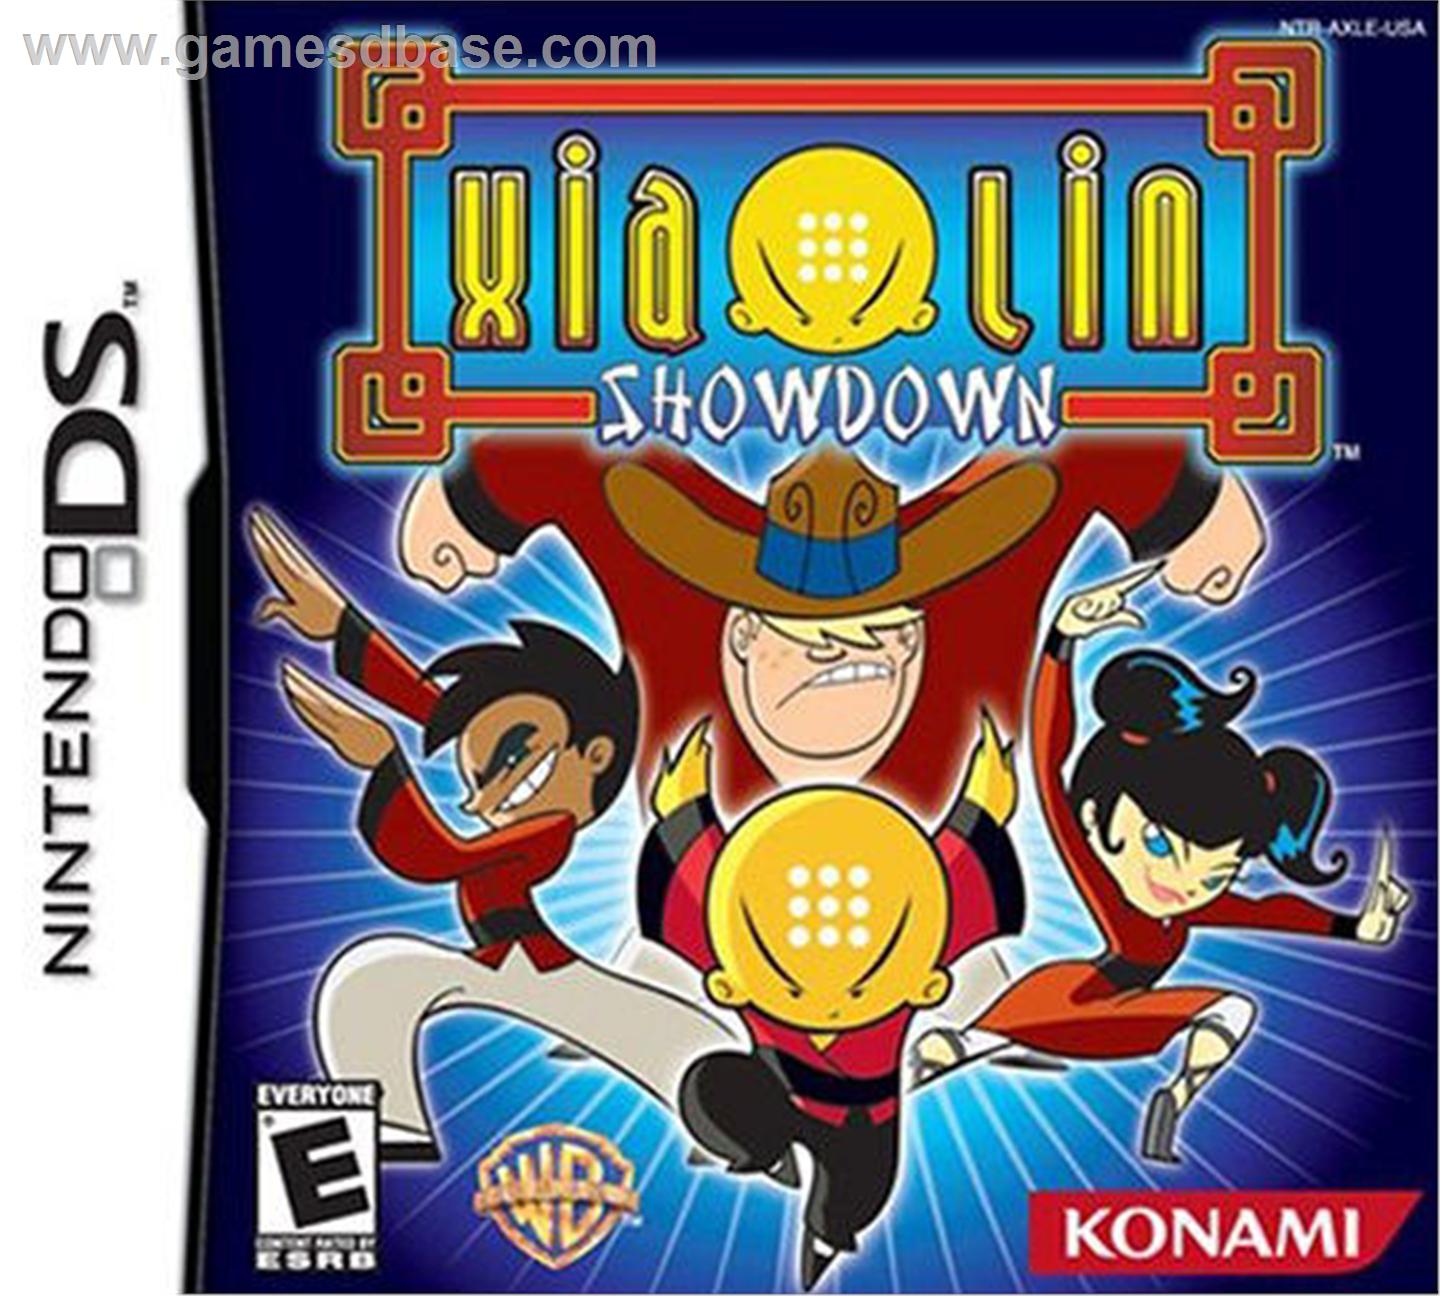 Xiaolin Showdown (video game) - Wikipedia